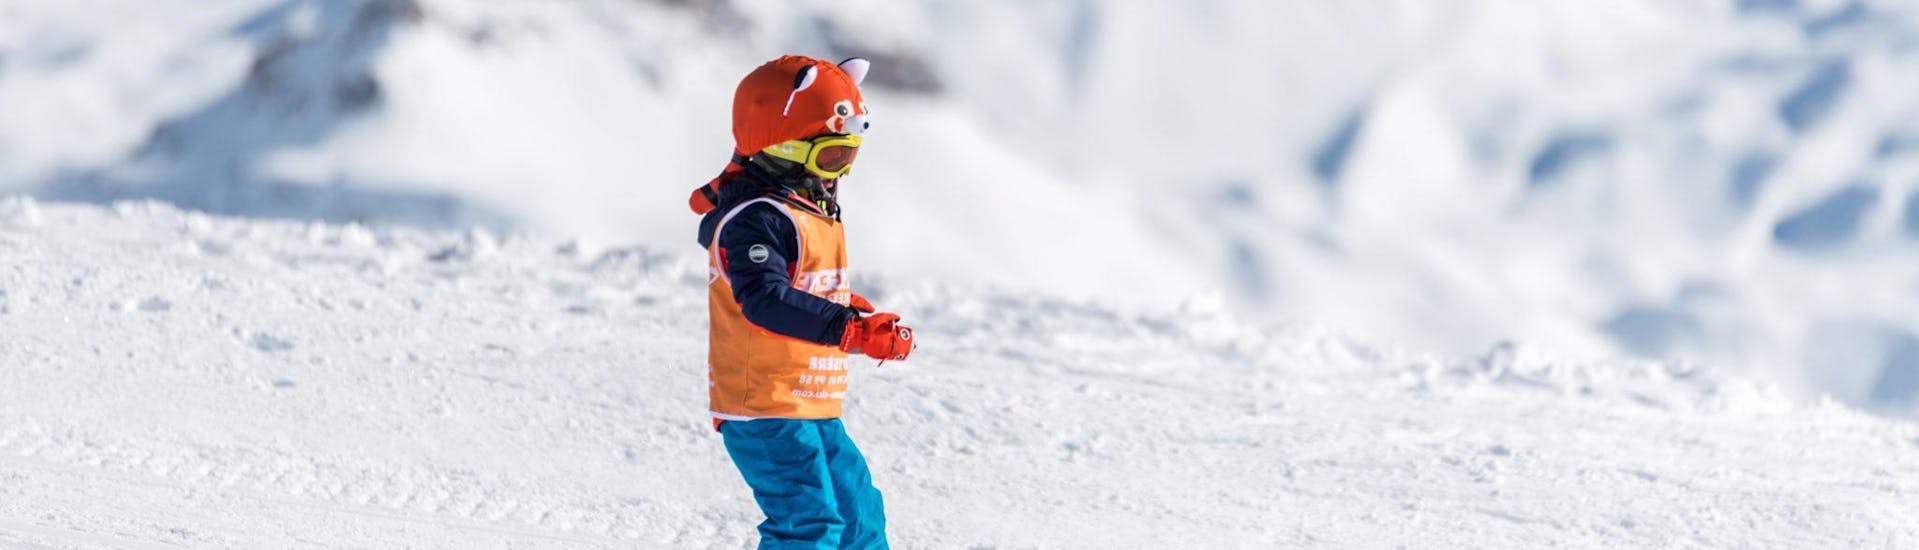 Ein Kind nimmt am privaten Skikurs für Kinder teil - im Februar bei Starski Grand Bornand.